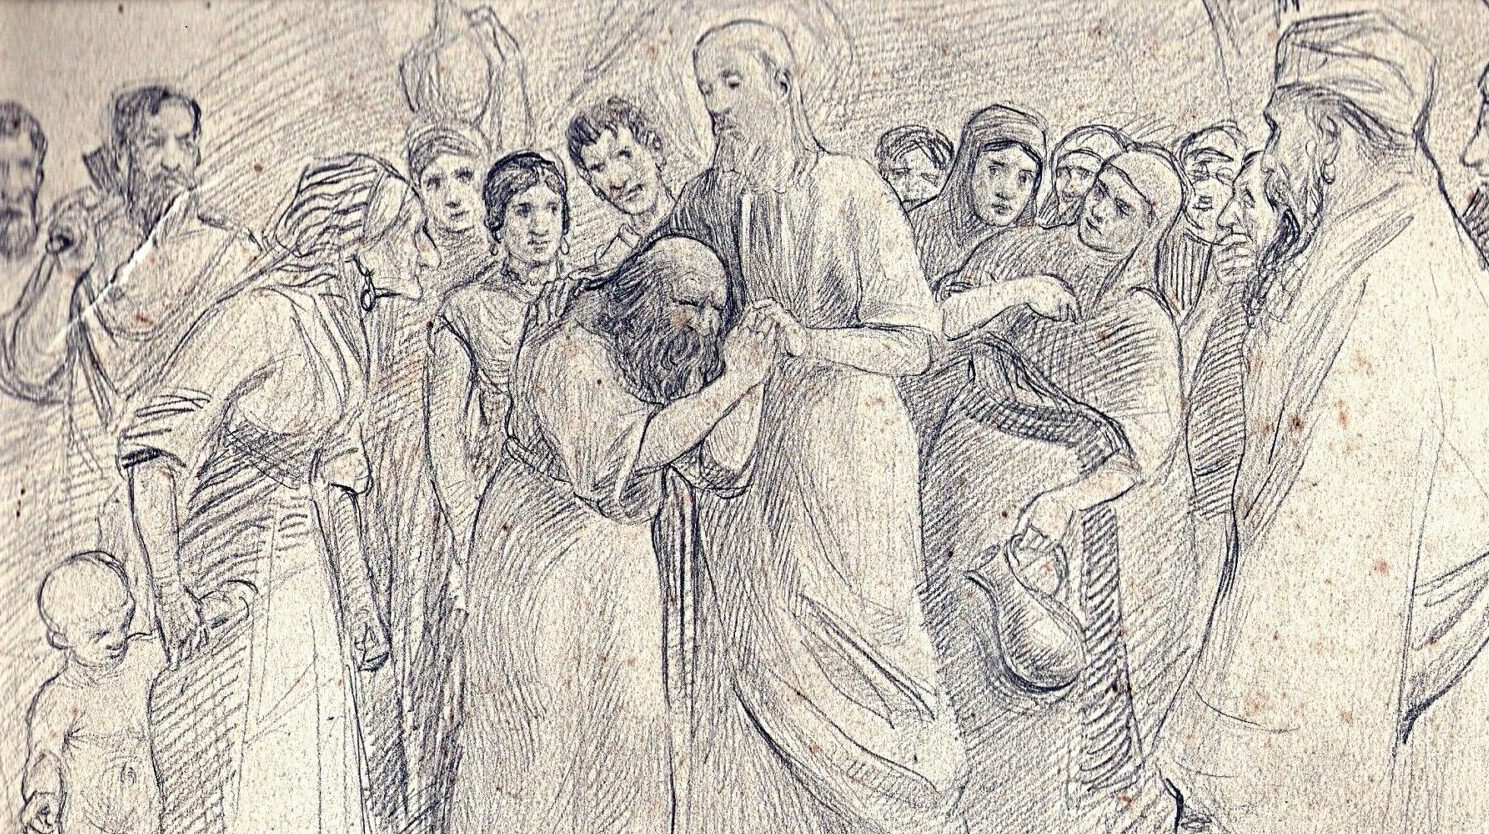 Jezus uzdrawiający niewidomego. Rysunek ołówkiem,1912 autorstwa G.Th.Rotman, fot. domena publiczna